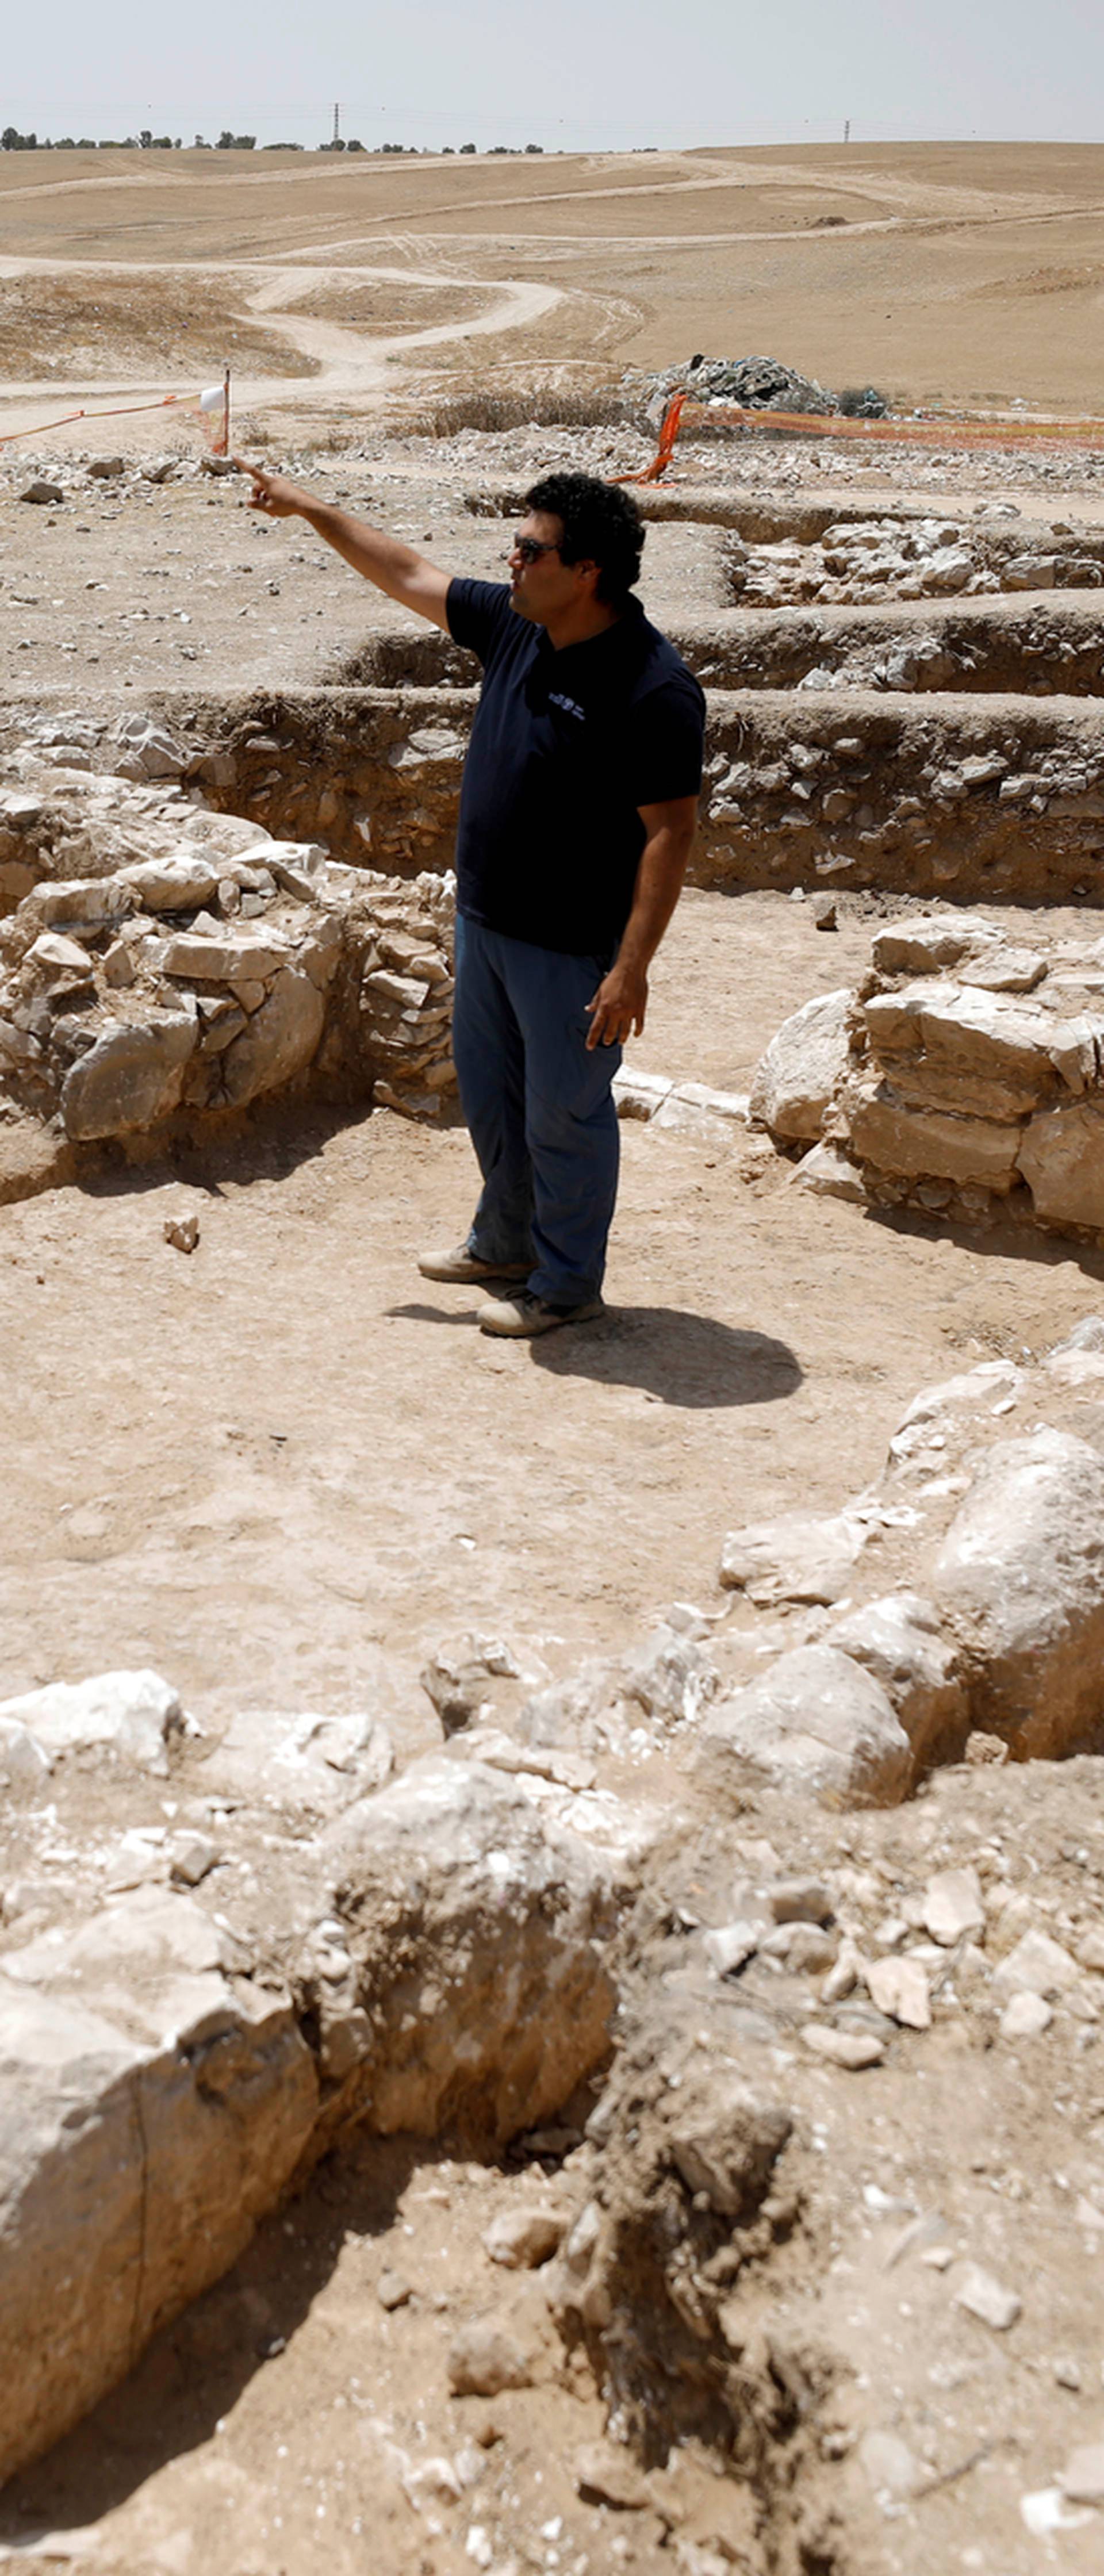 Rijetko otkriće u Izraelu: Usred pustinje našli drevnu džamiju